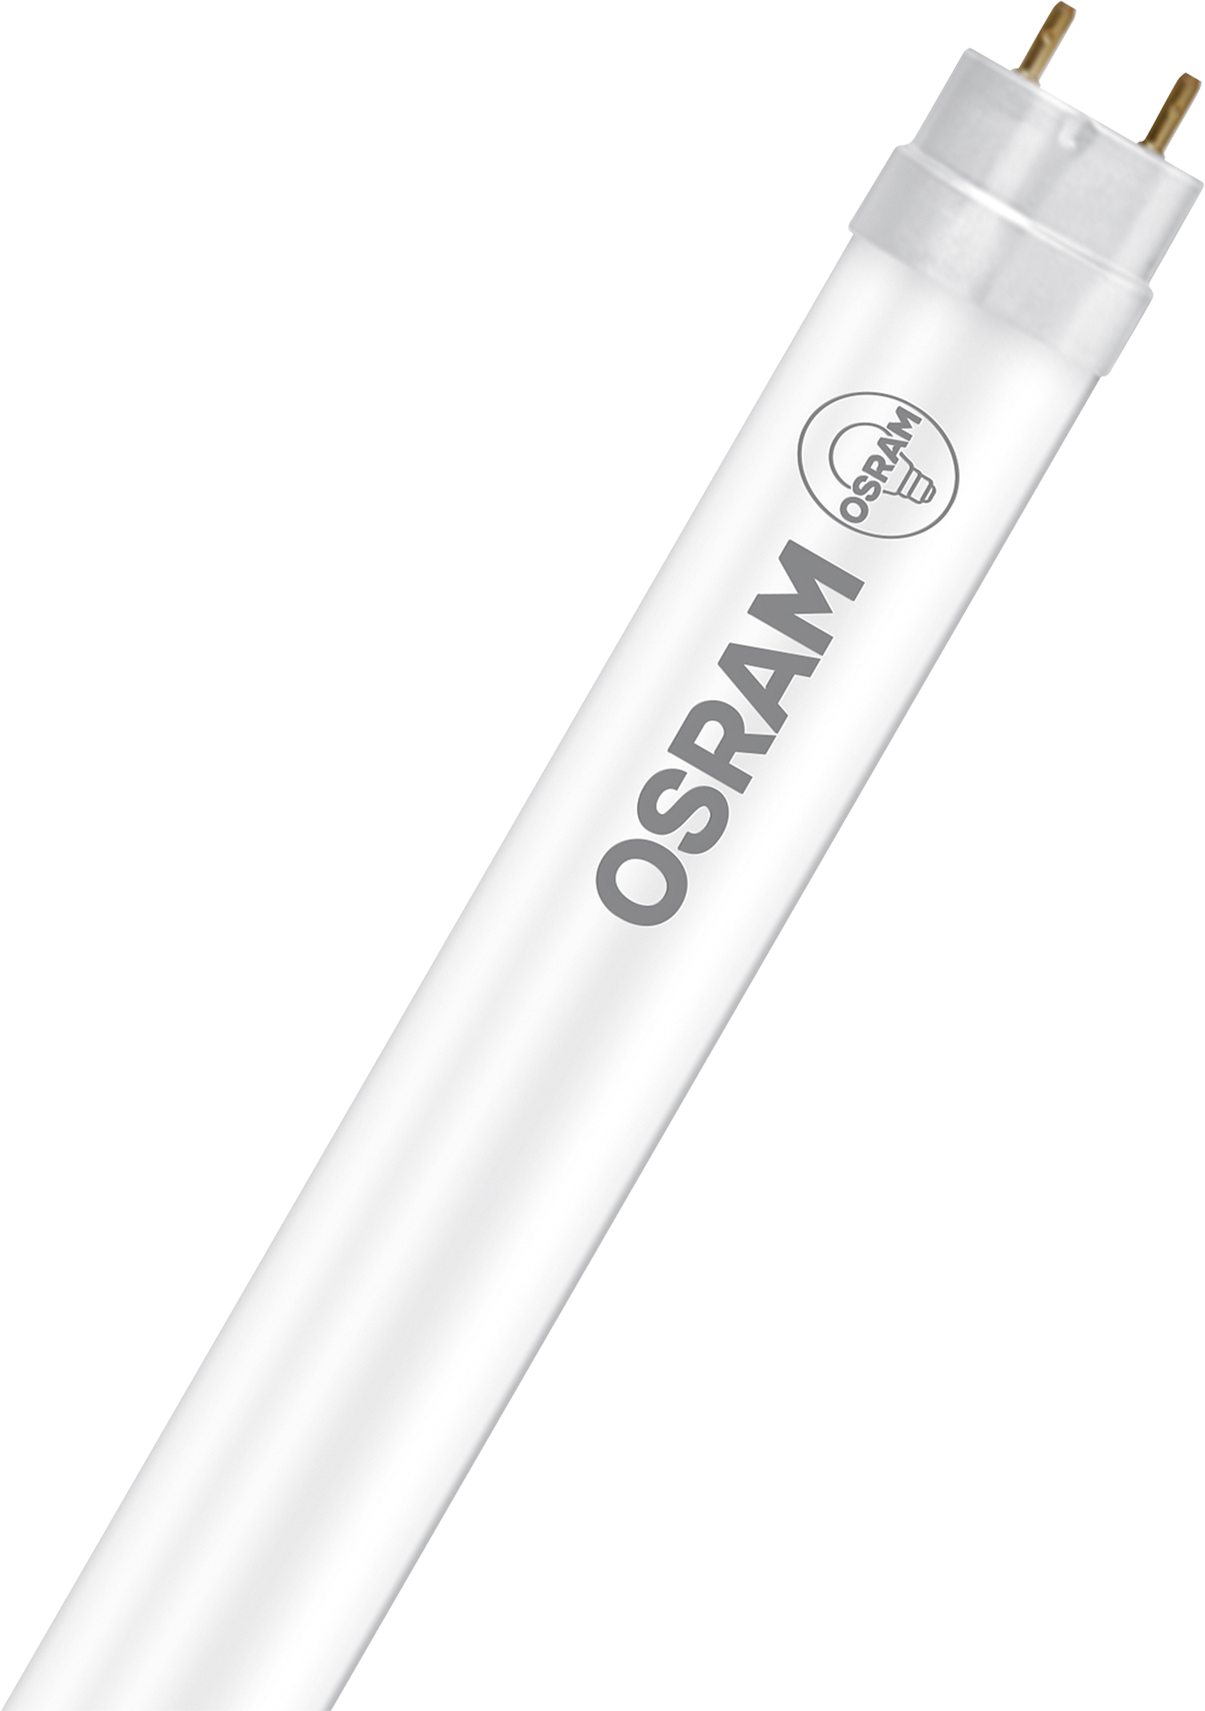 OSRAM Leuchtstofflampe T8 G13, 18.3W, 2000lm, warm white - Lampen, Leuchten